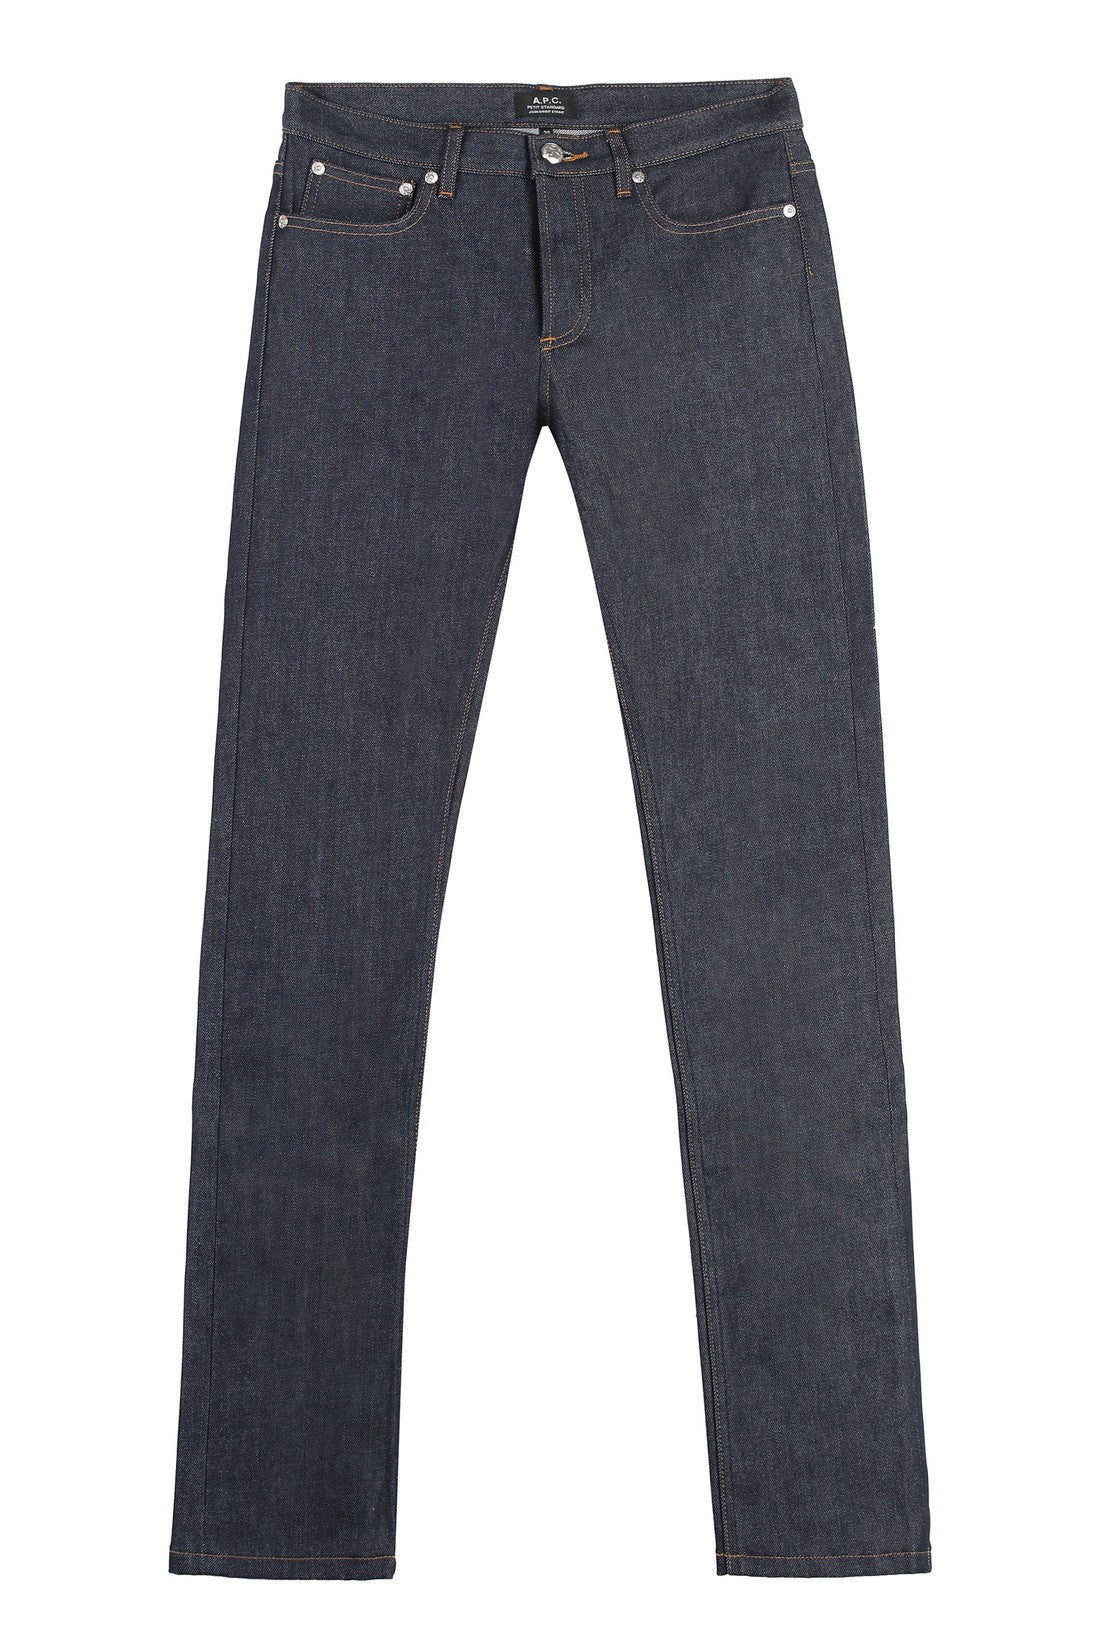 A.P.C.-OUTLET-SALE-slim fit jeans-ARCHIVIST